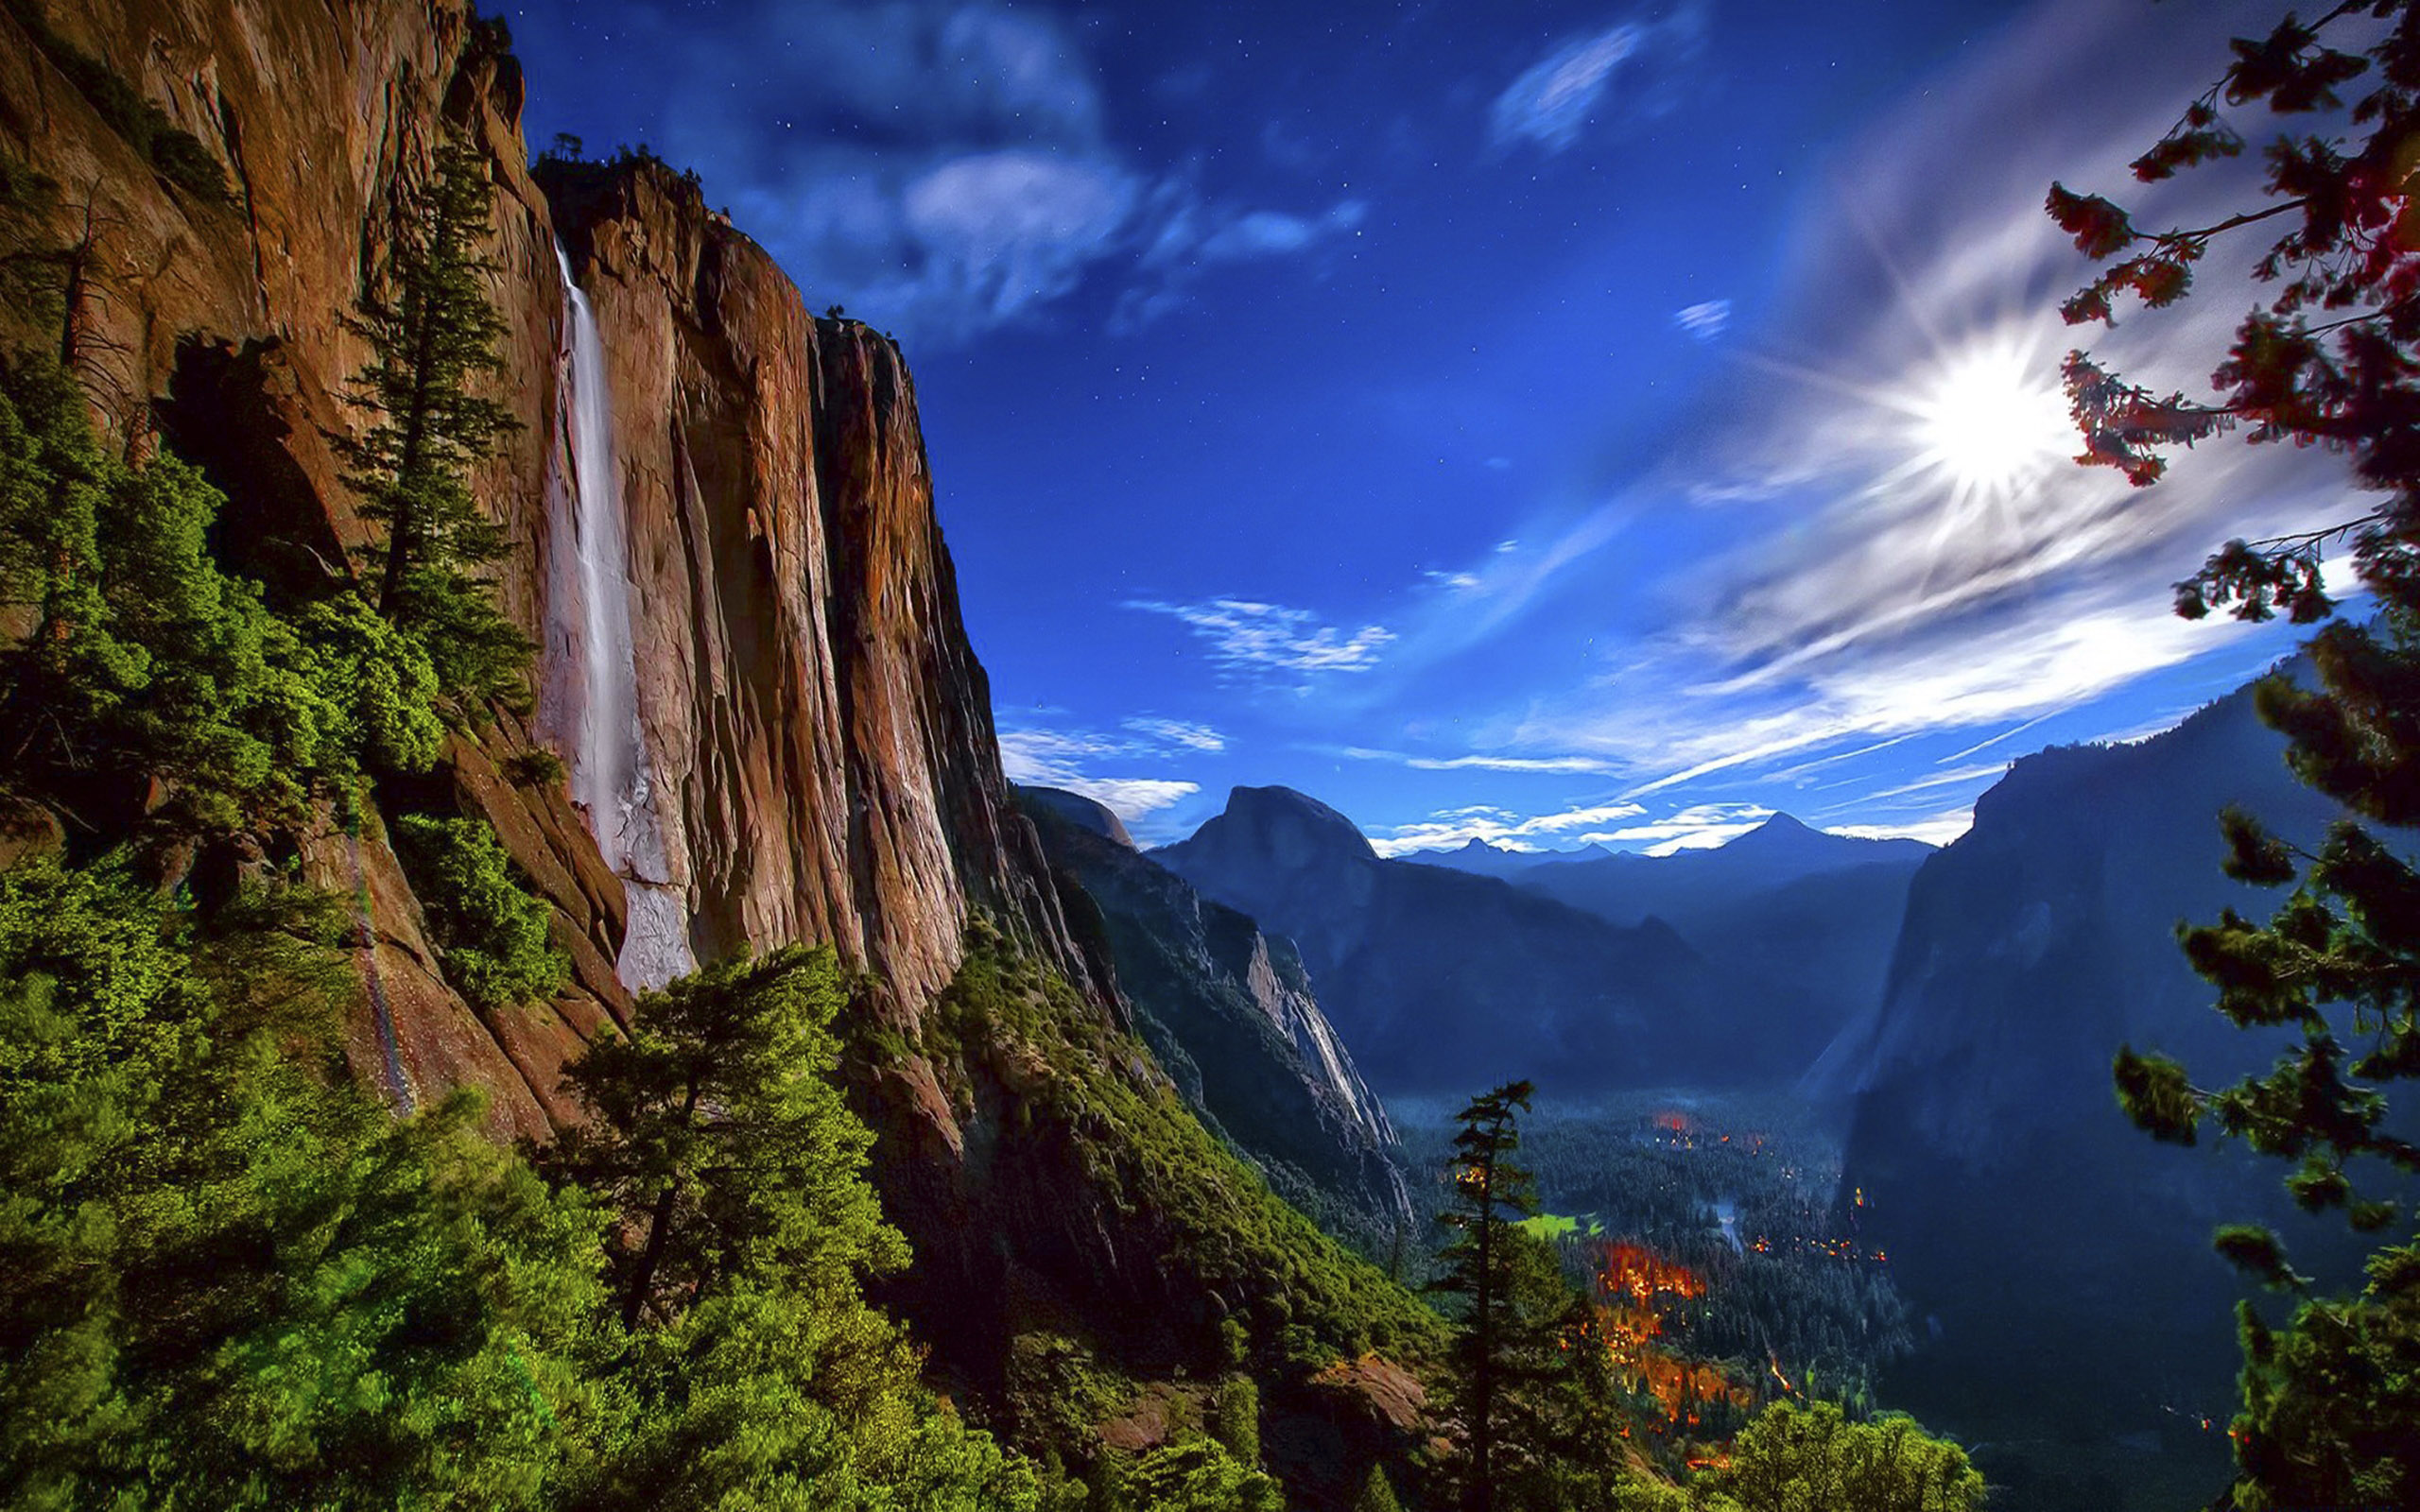 Khám phá vẻ đẹp hoang sơ của Yosemite thông qua hình nền chủ đề về Yosemite National Park. Tận hưởng không khí mát mẻ và cảm nhận bầu không khí trong lành của khu vực núi rừng này chỉ bằng cách nhấn vào hình nền tuyệt đẹp này.